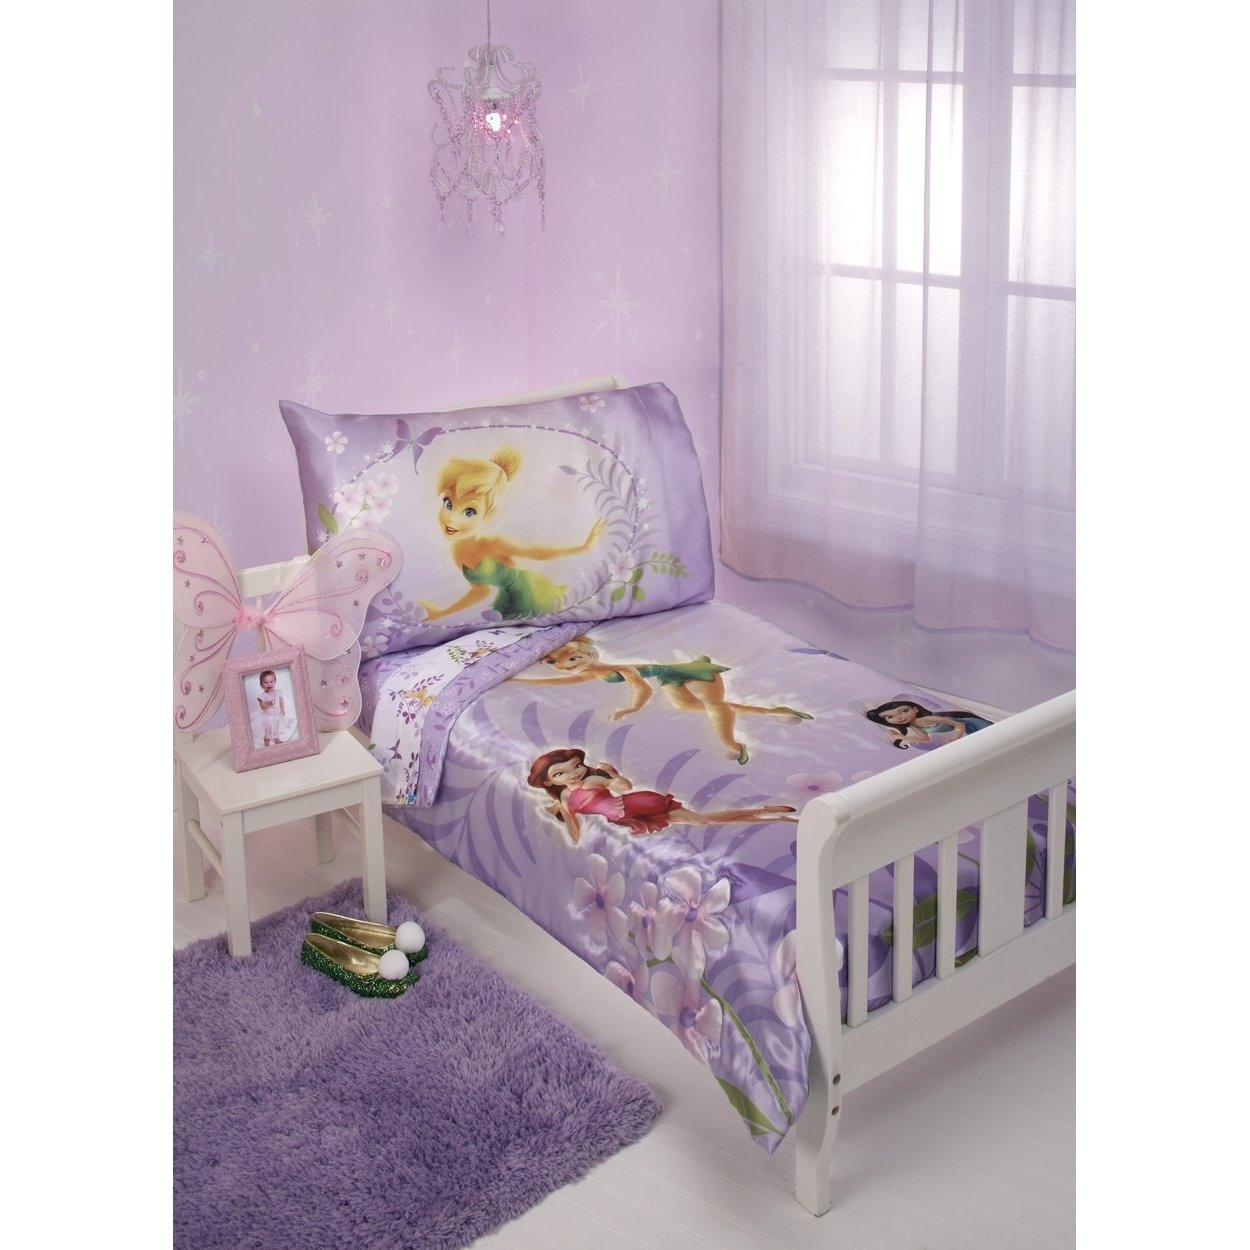 fonds d'écran girly pour les chambres,produit,violet,meubles,violet,lit